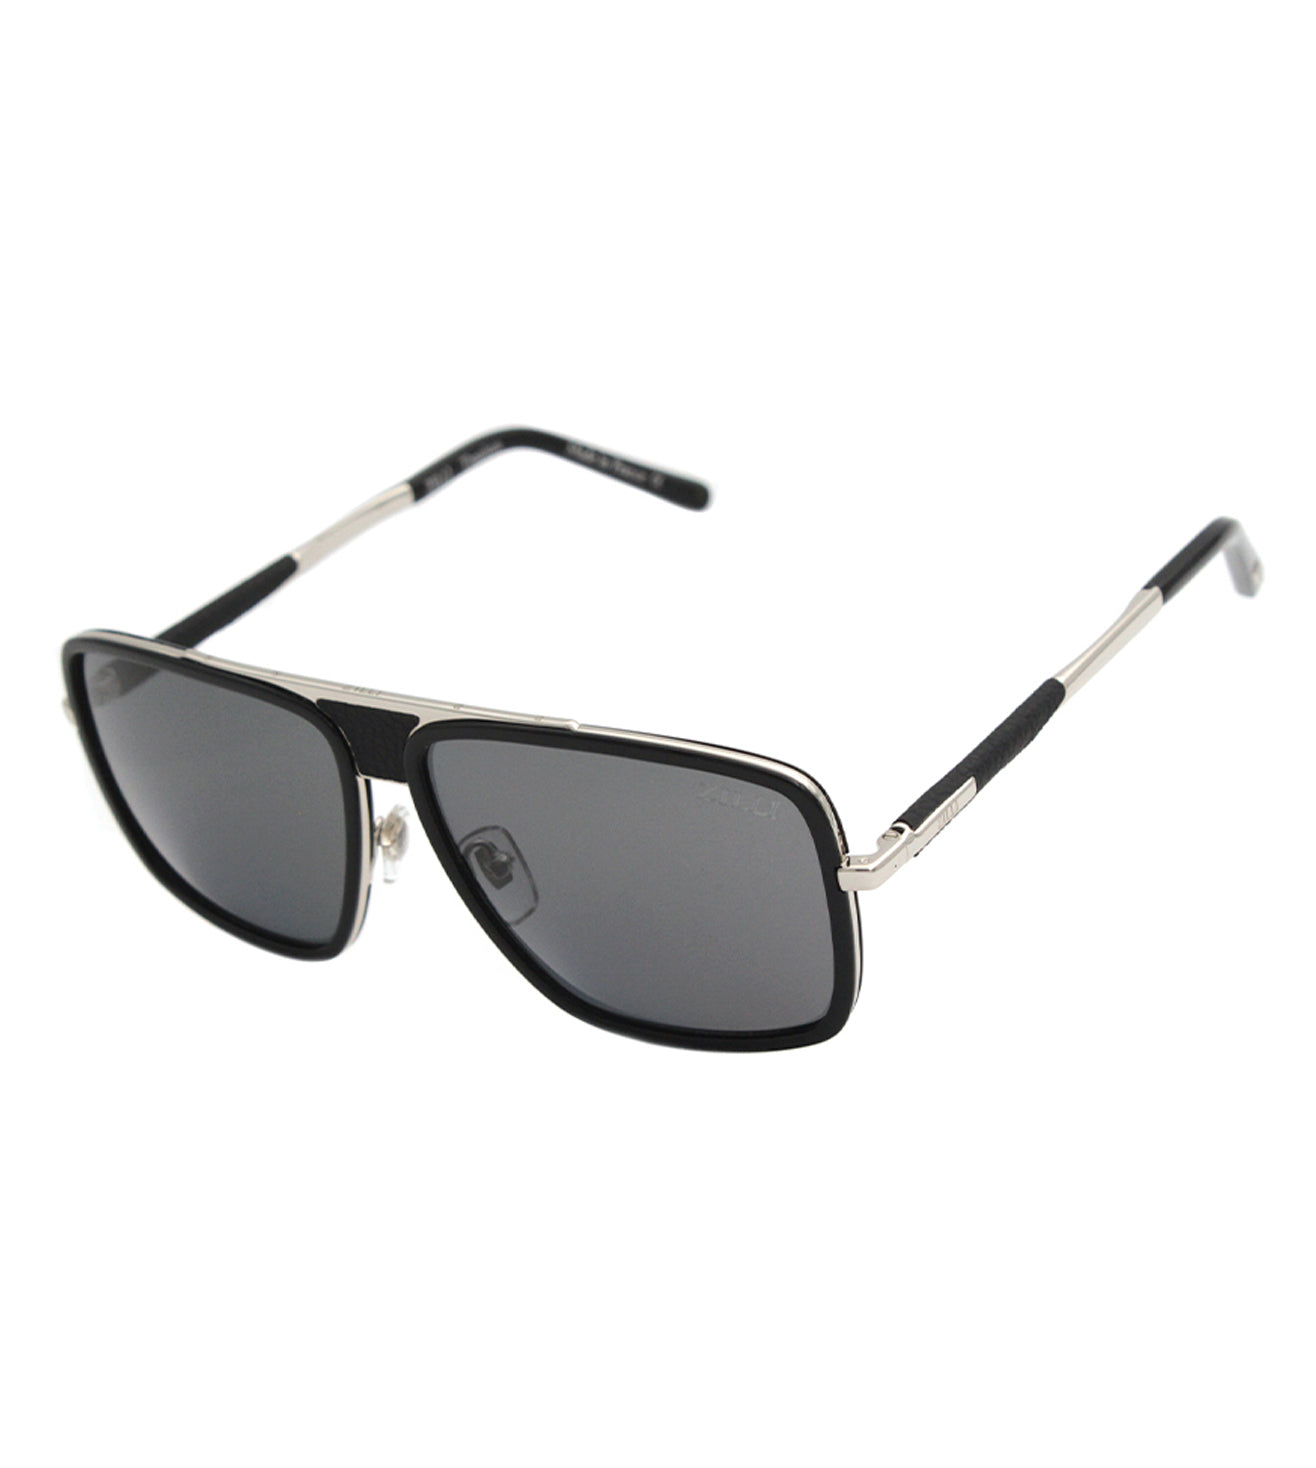 Zilli Men's Grey Square Sunglasses